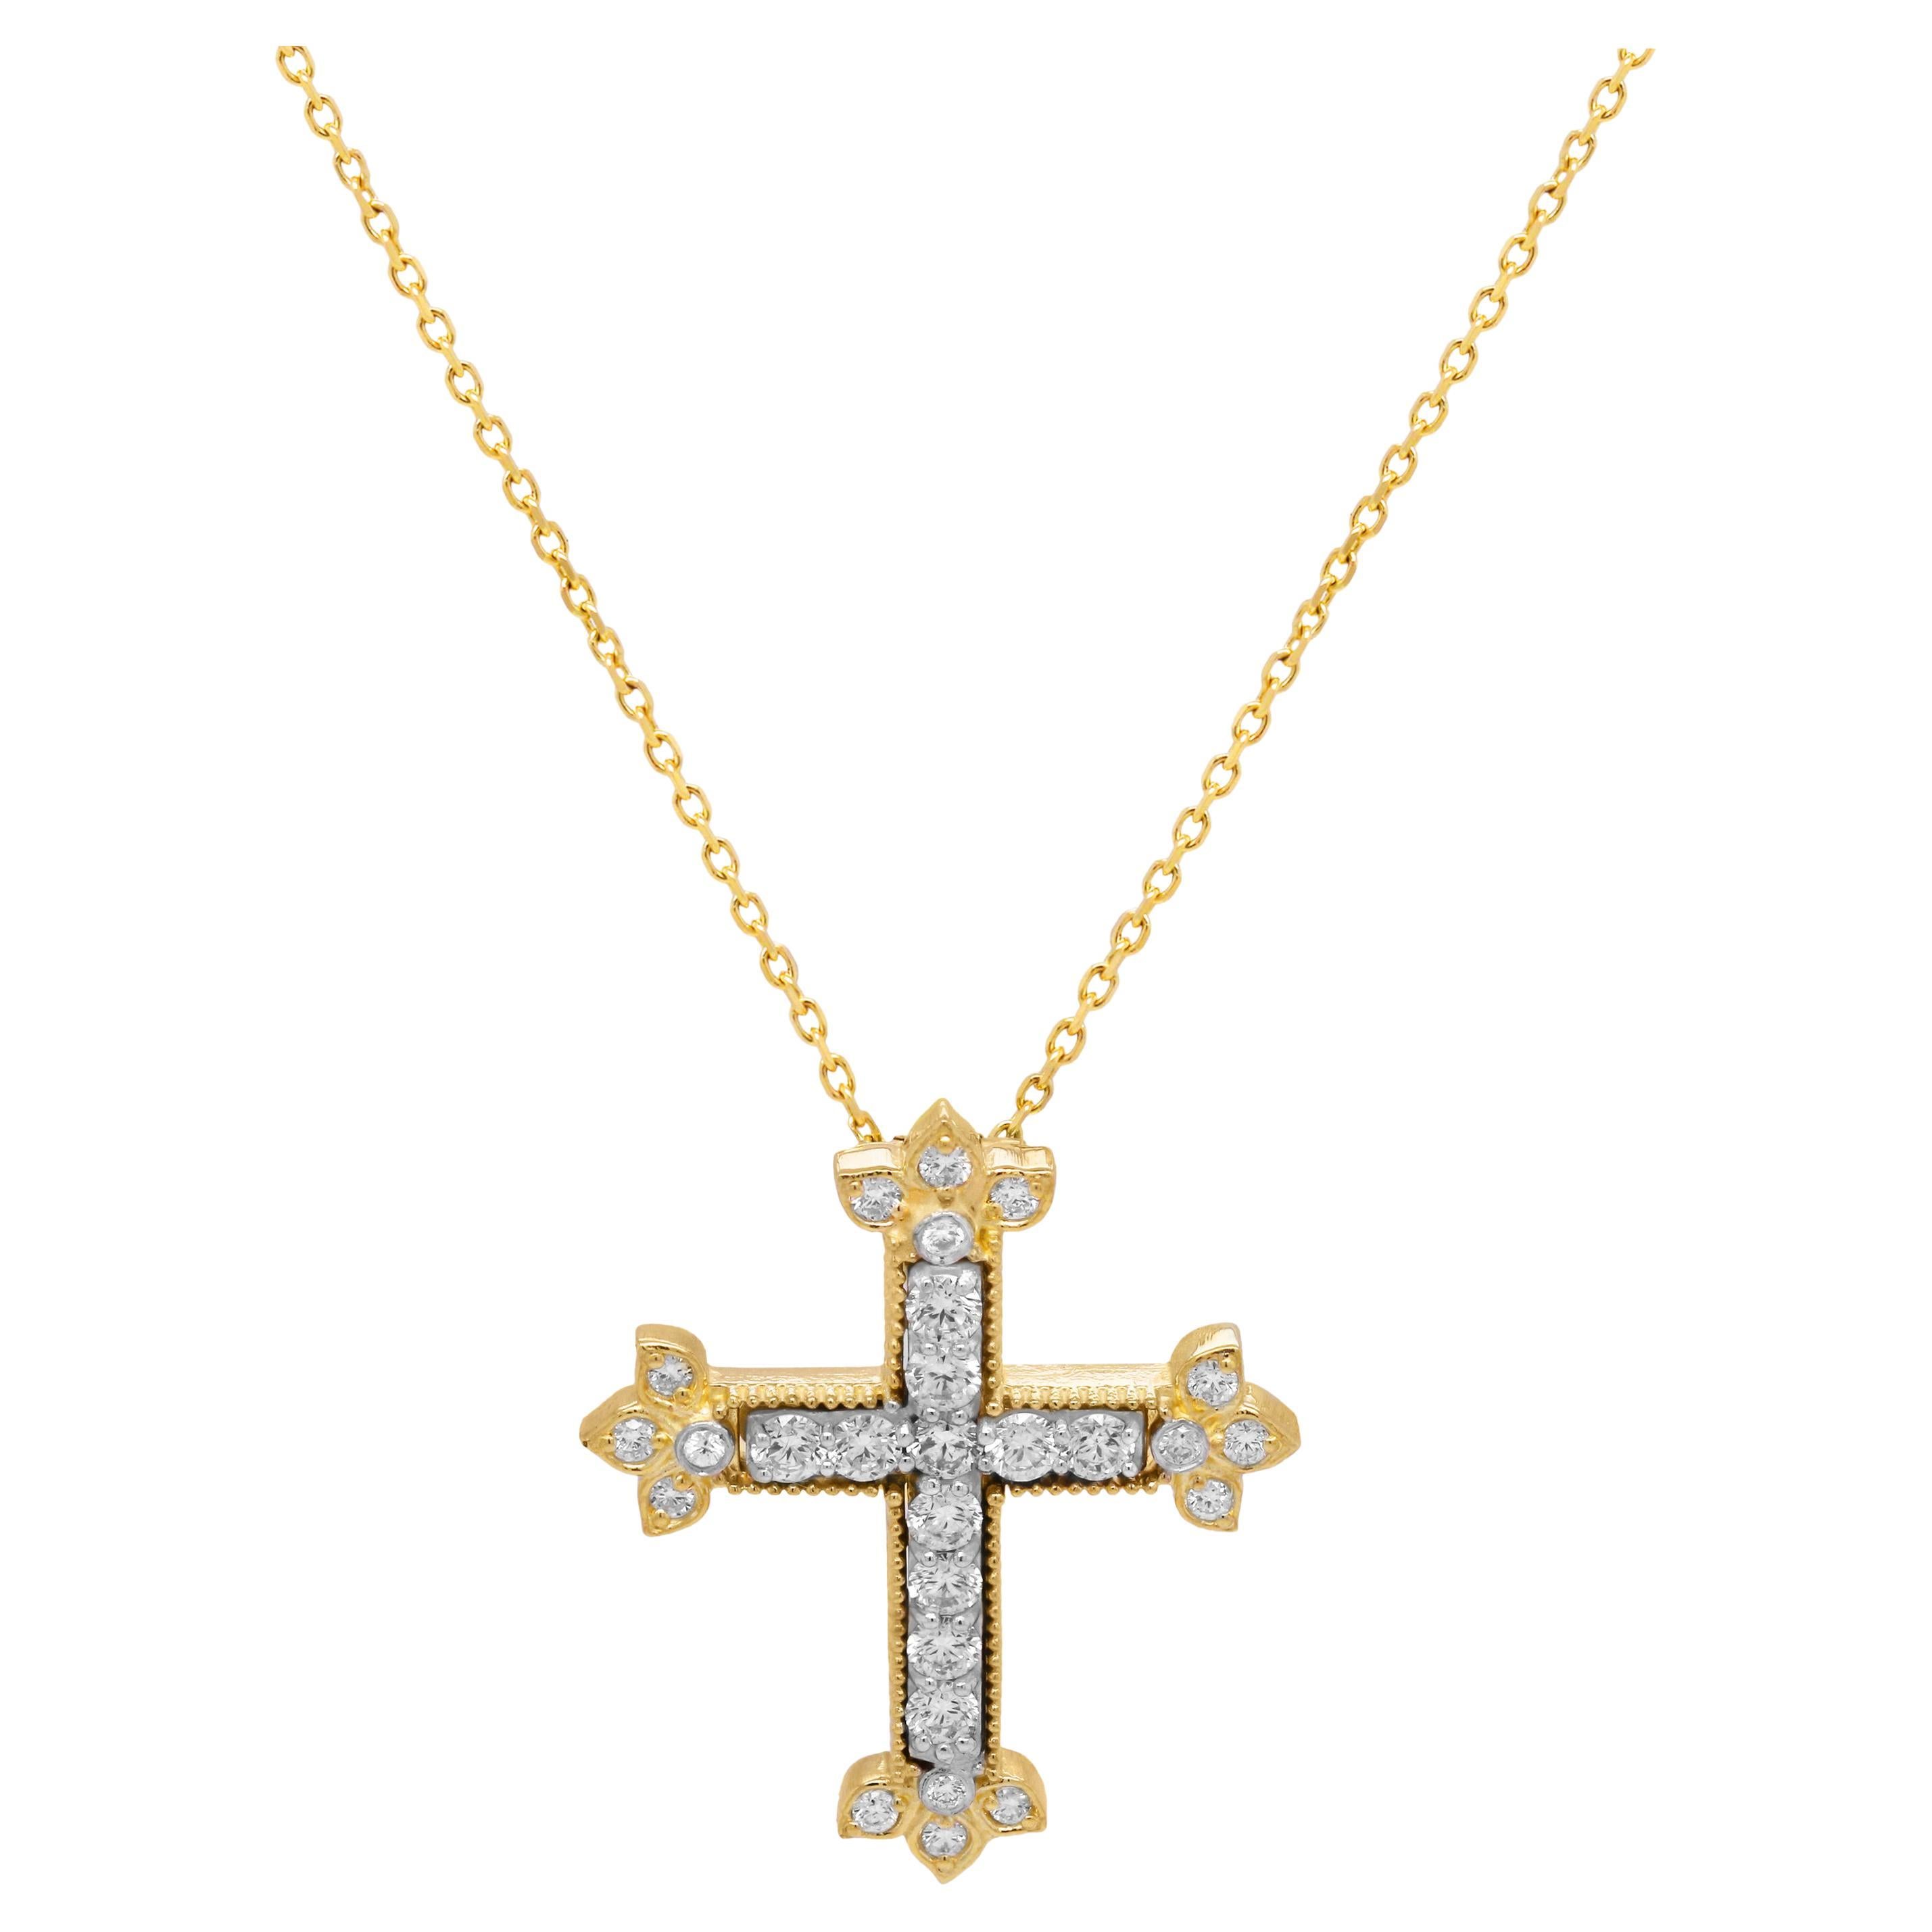 Stambolian, collier à pendentif croix en or jaune et blanc 18 carats avec diamants